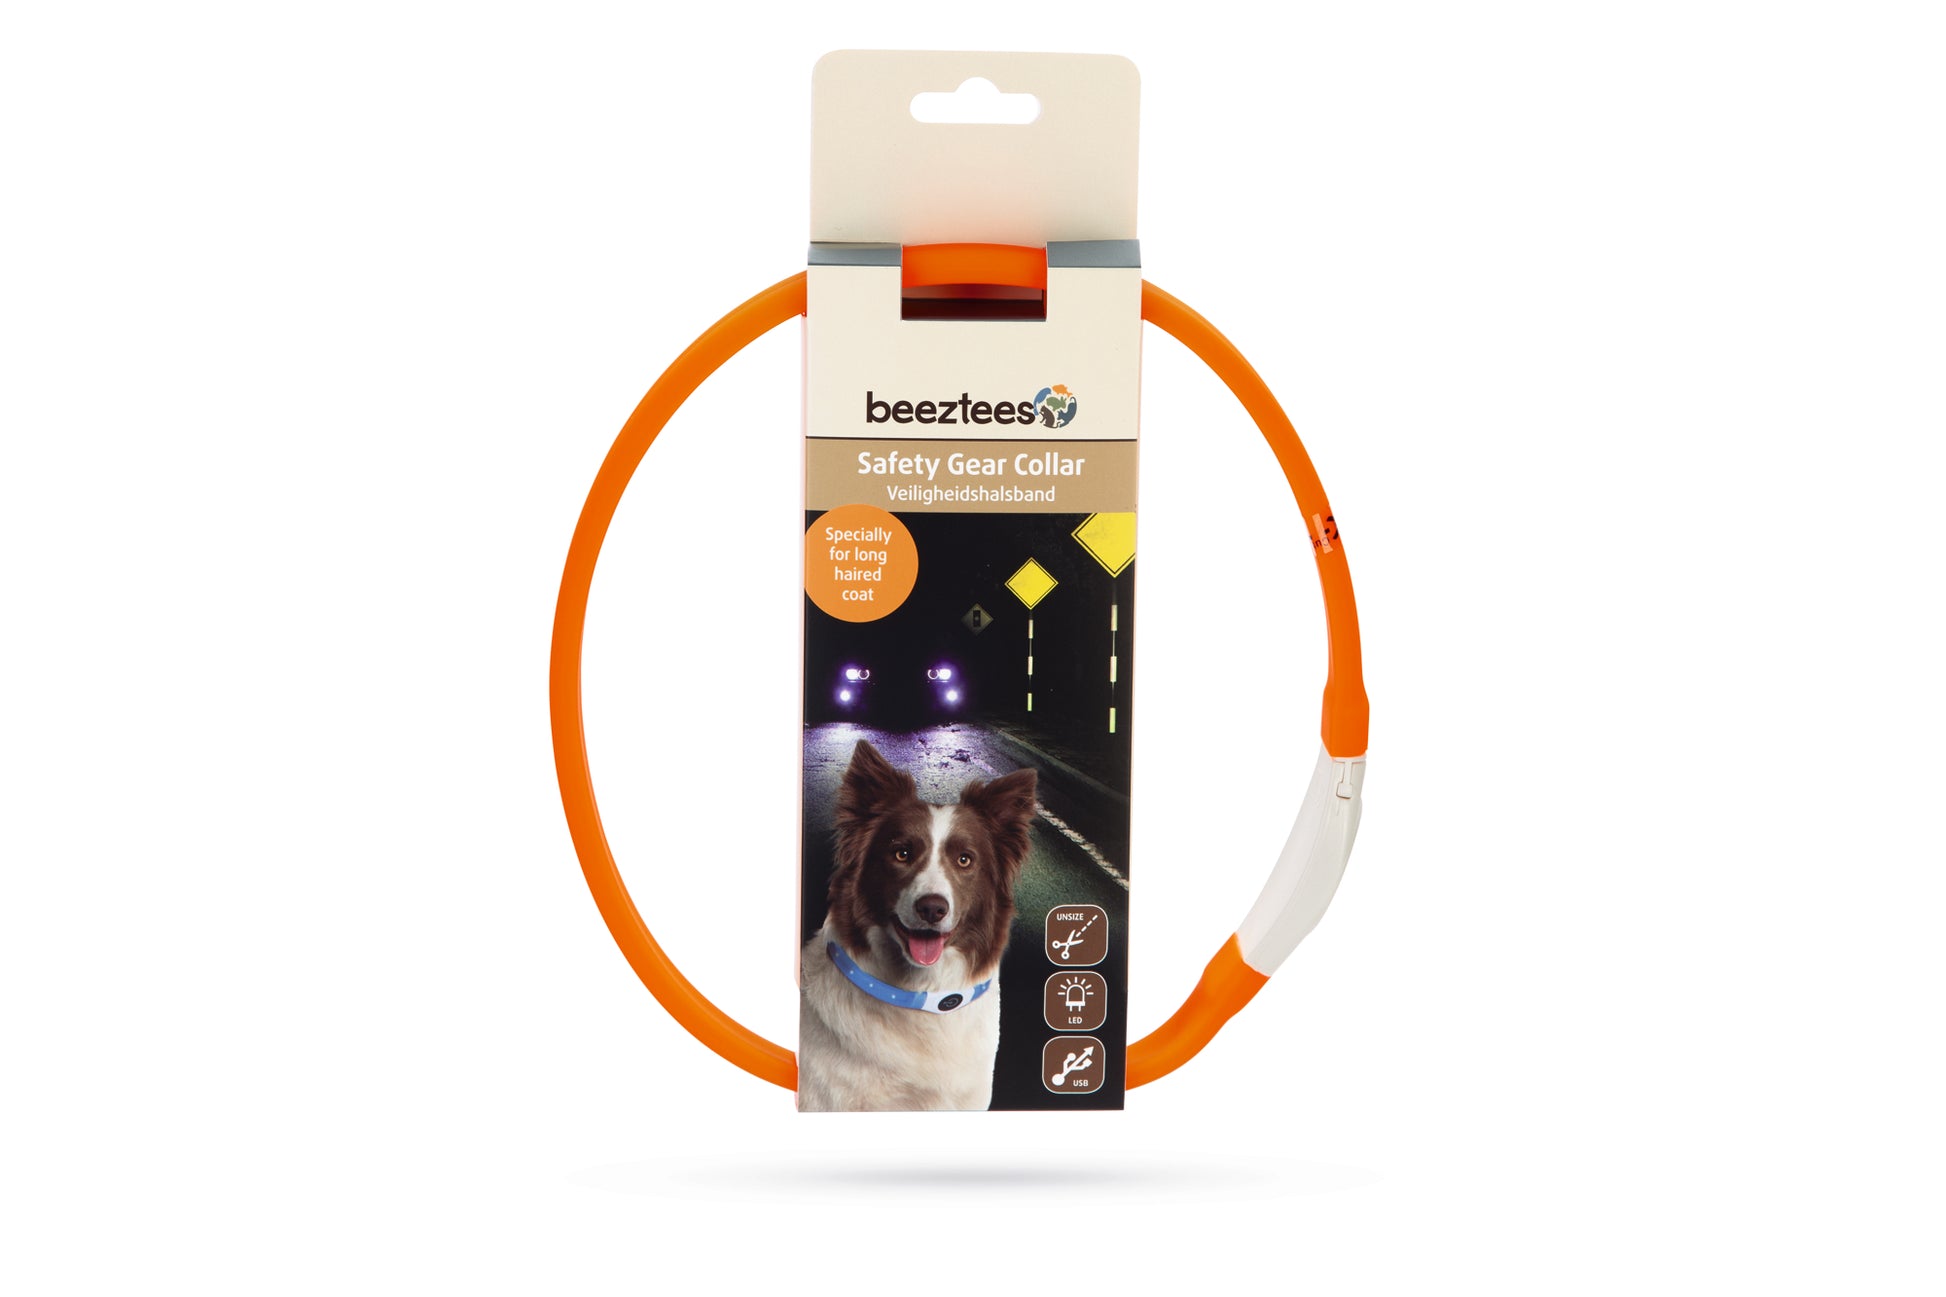 De Glowy Hondenhalsband is niet zomaar een halsband. Deze Safety Gear halsband is namelijk voorzien van verlichting en kan ook nog eens op maat worden geknipt. Het licht heeft maar liefst drie standen: 2 keer knipperend en 1 keer continue brandend. Met deze verlichting kan je ervoor zorgen dat jij en jouw hond goed zichtbaar zijn voor anderen. De halsband is regenbestendig en kan worden opgeladen met de bijgeleverde USB kabel. Geschikt voor langharige honden!